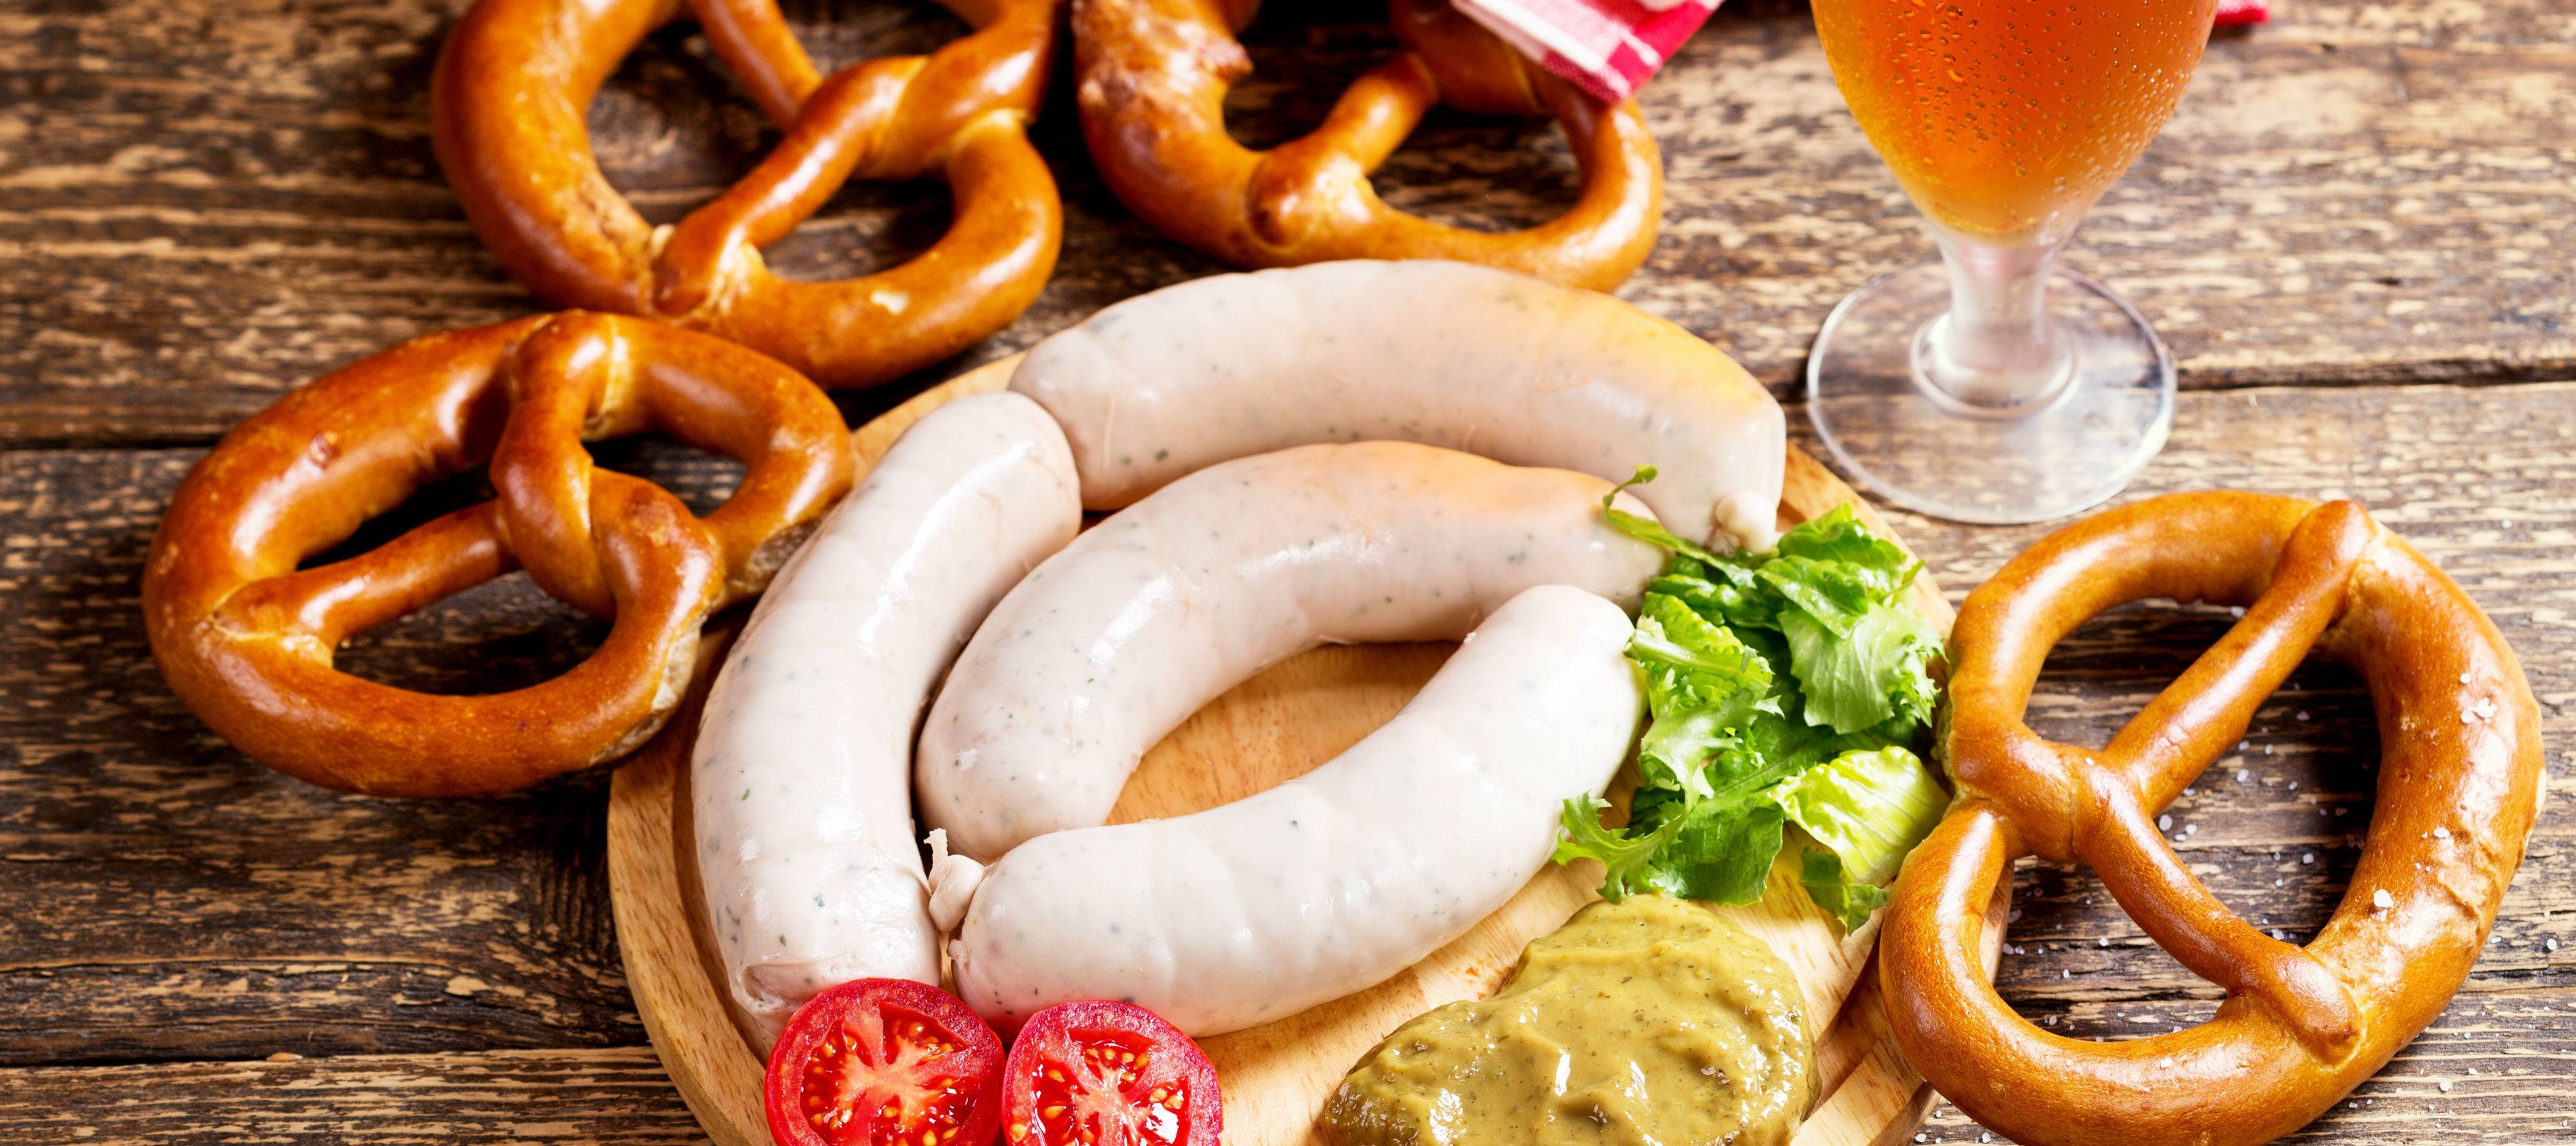 Баварские сосиски: состав, калорийность, рецепт и фото